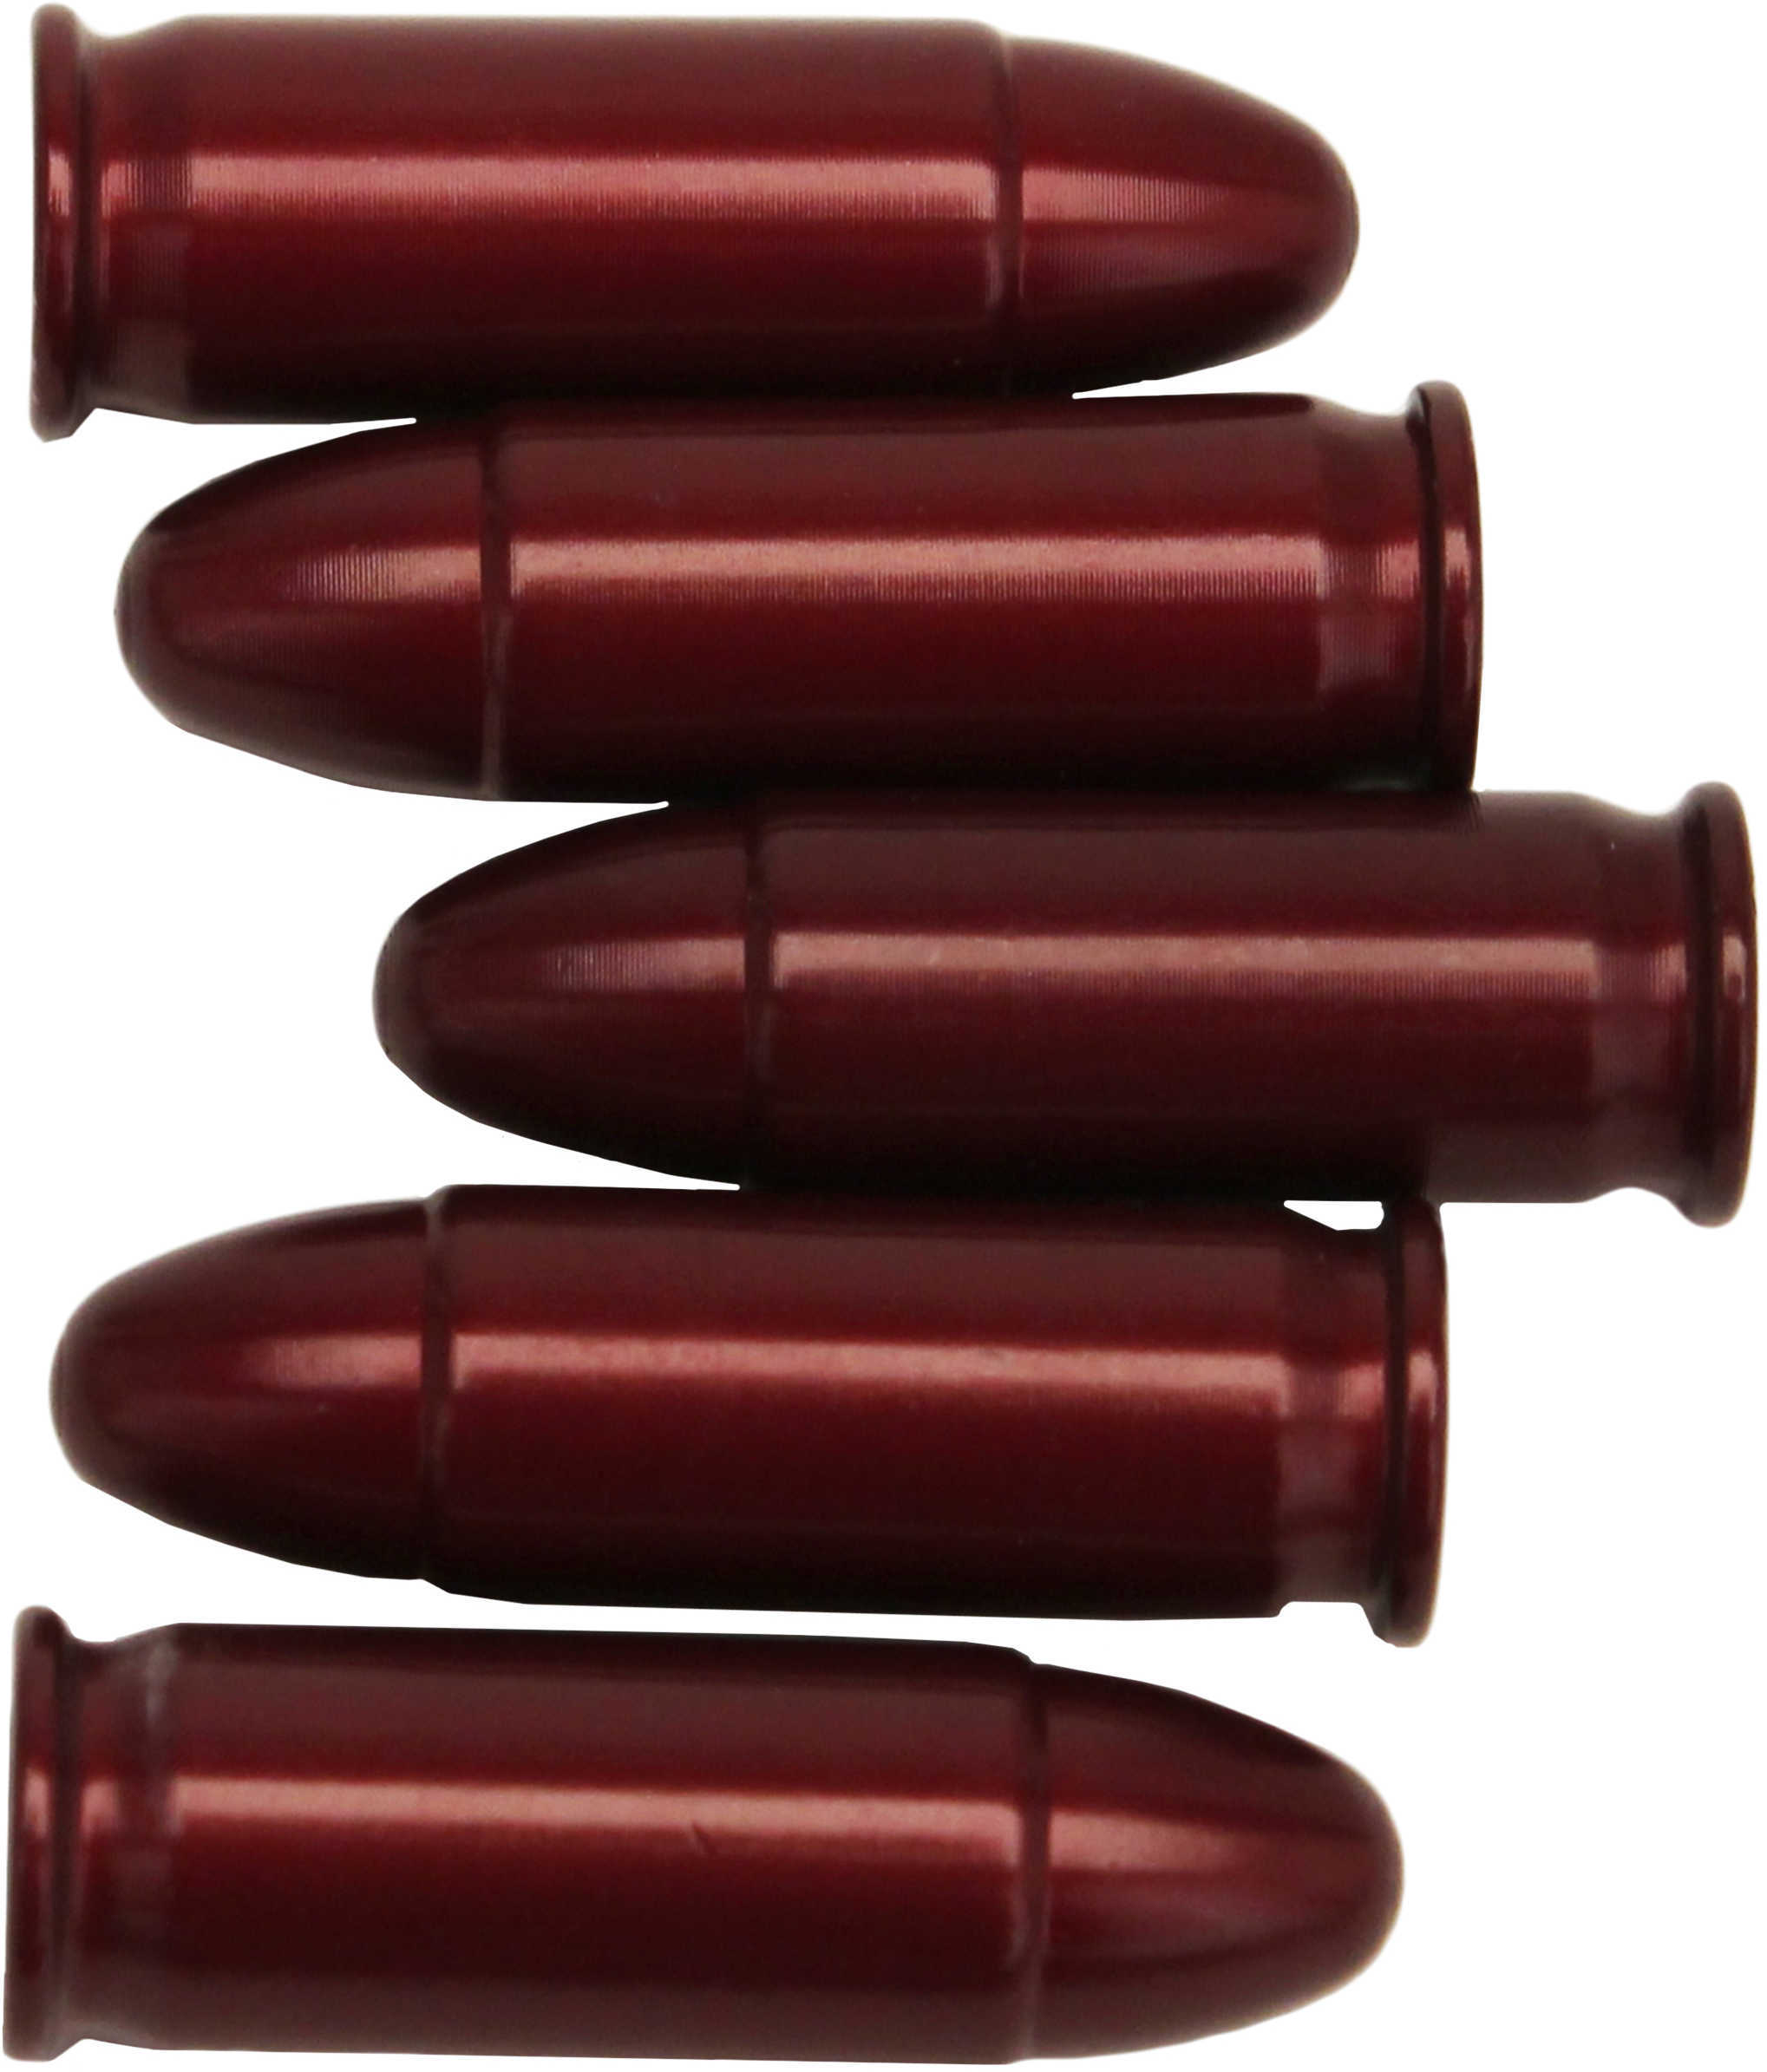 A-Zoom 15158 Pistol Snap Caps 38 Super 5 Per Pack